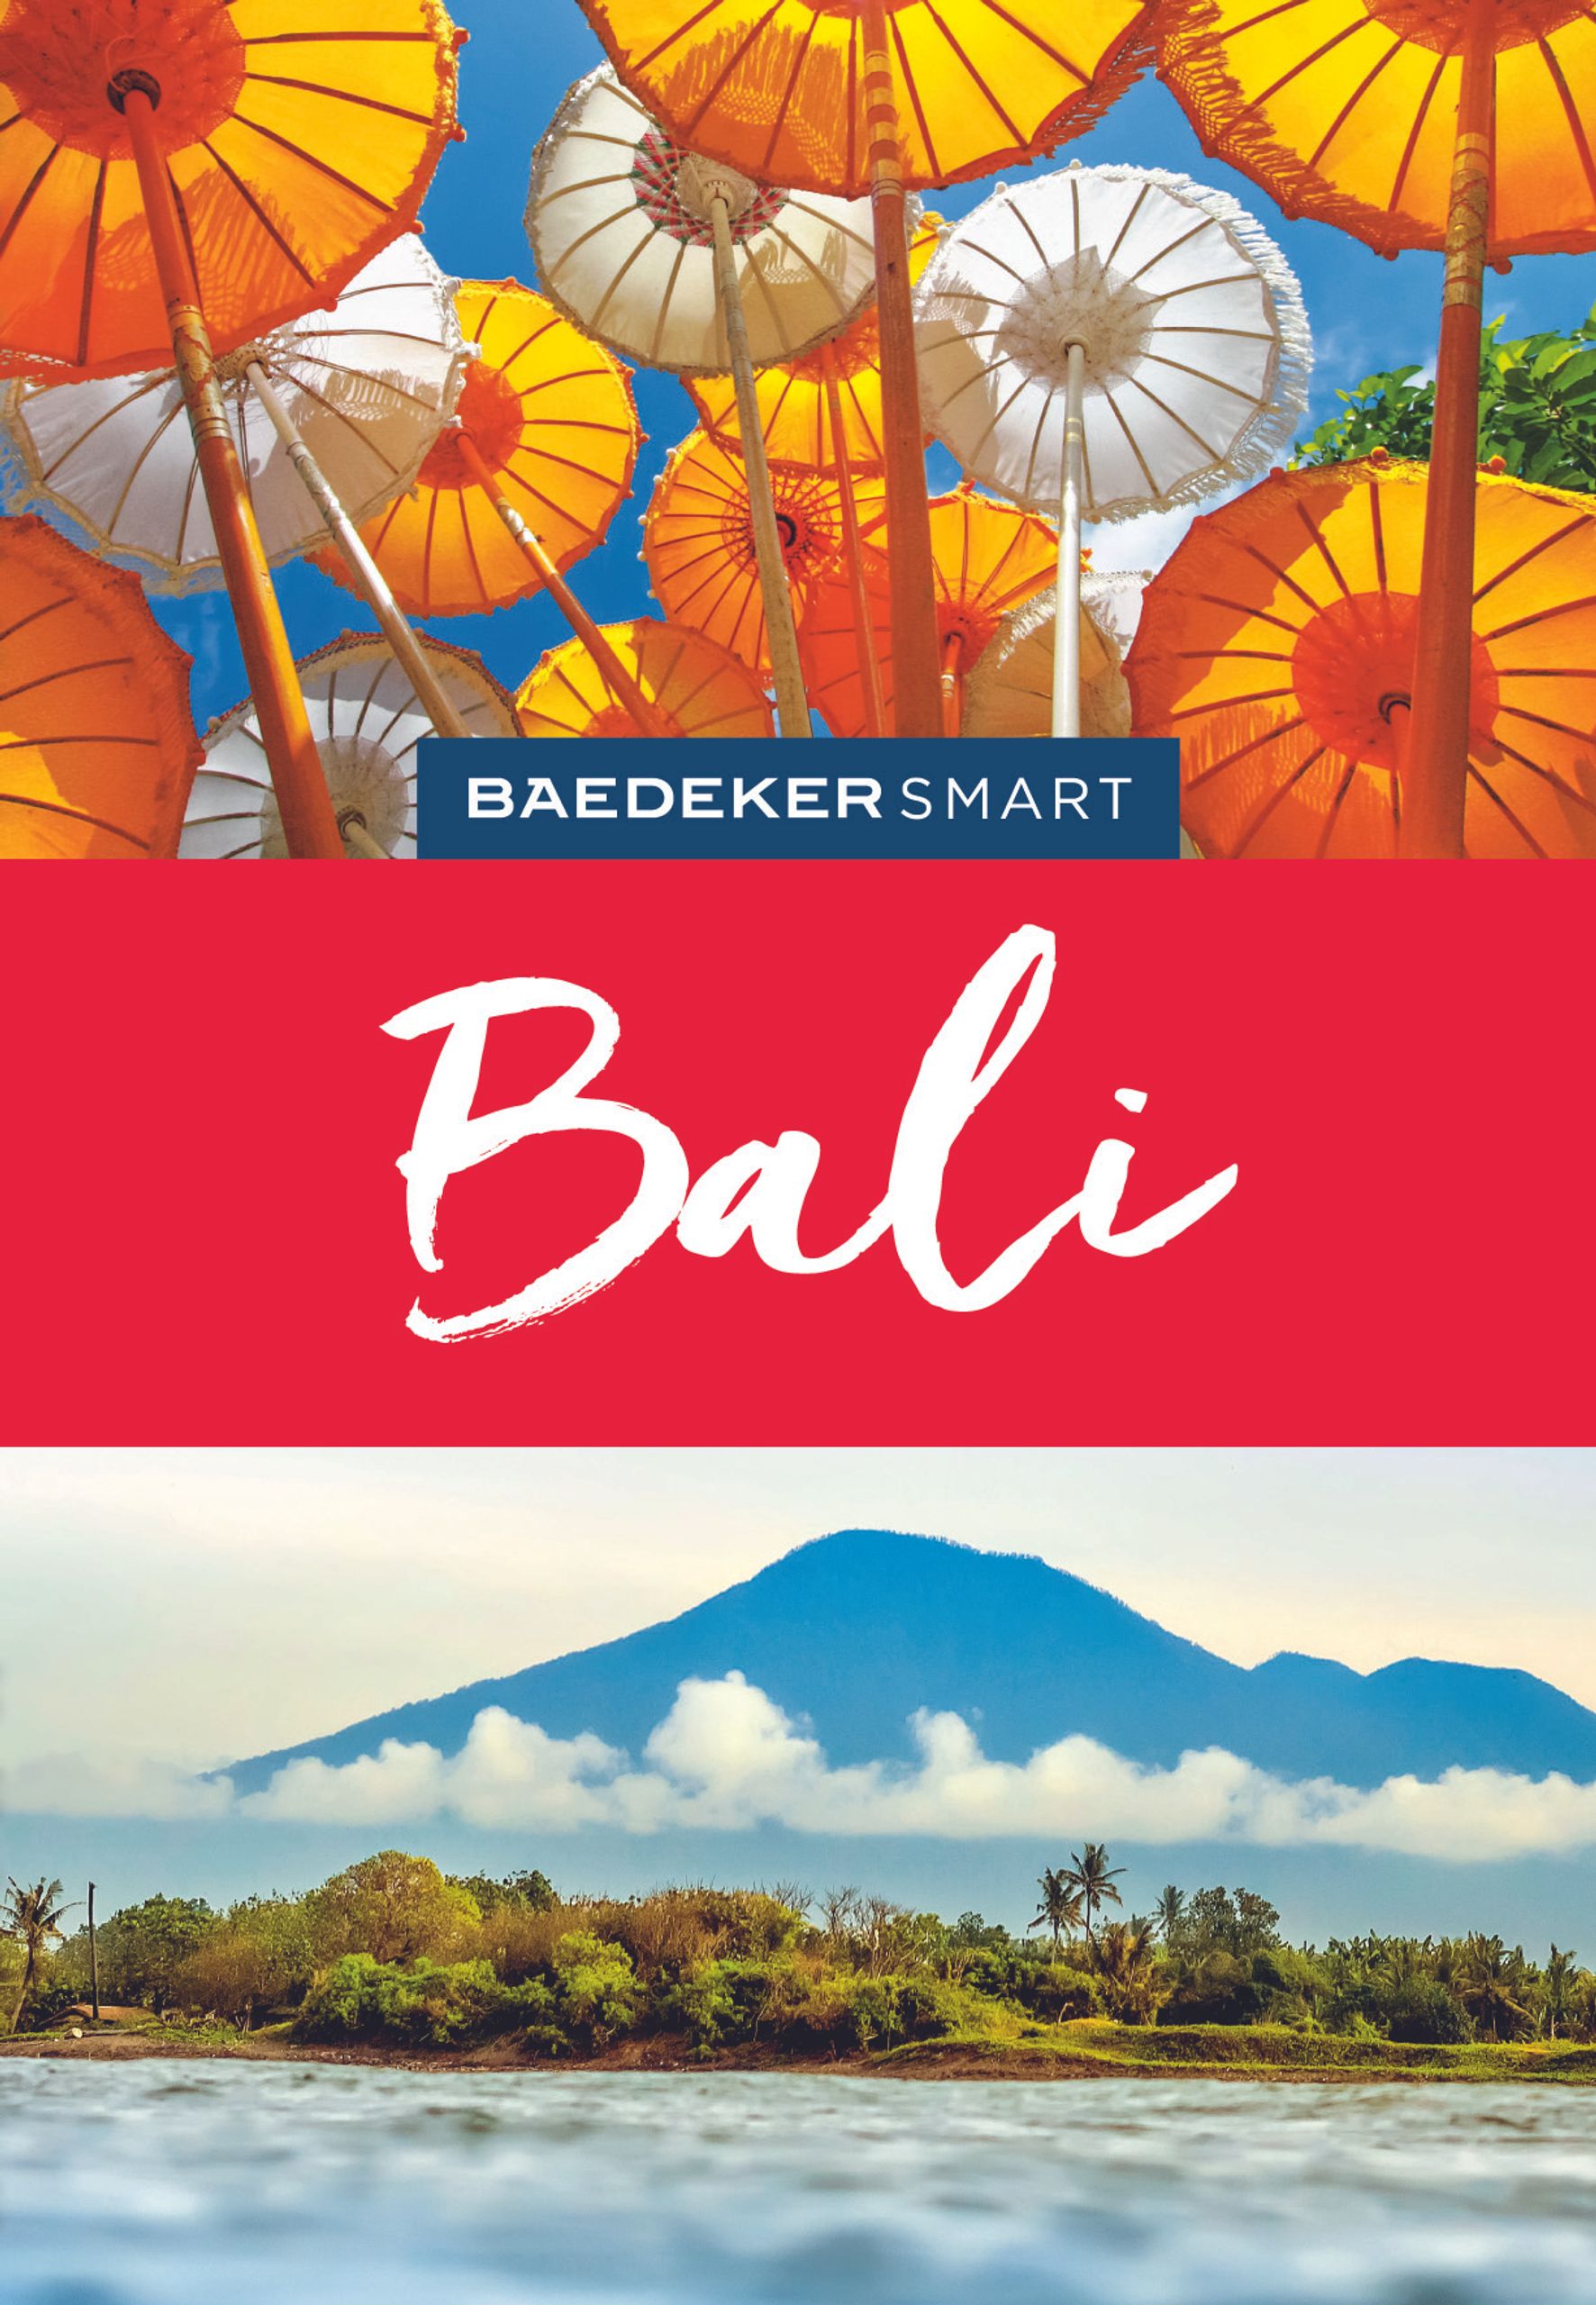 Baedeker Bali